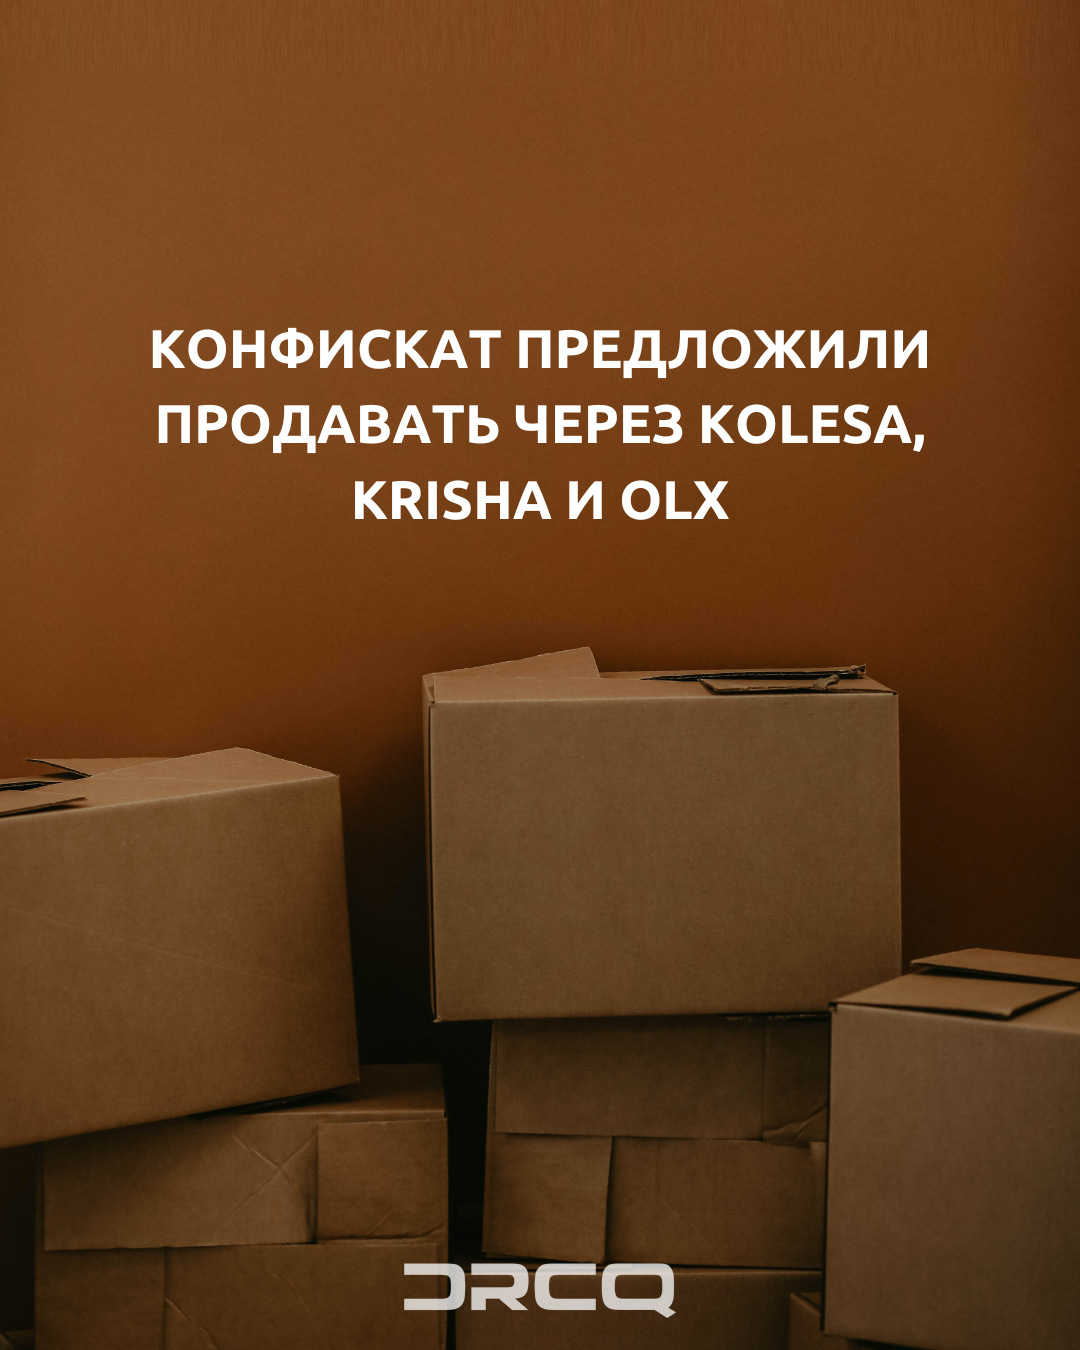 Транспортная прокуратура предложила продавать конфискованные товары через Kolesa, Krisha и OLX